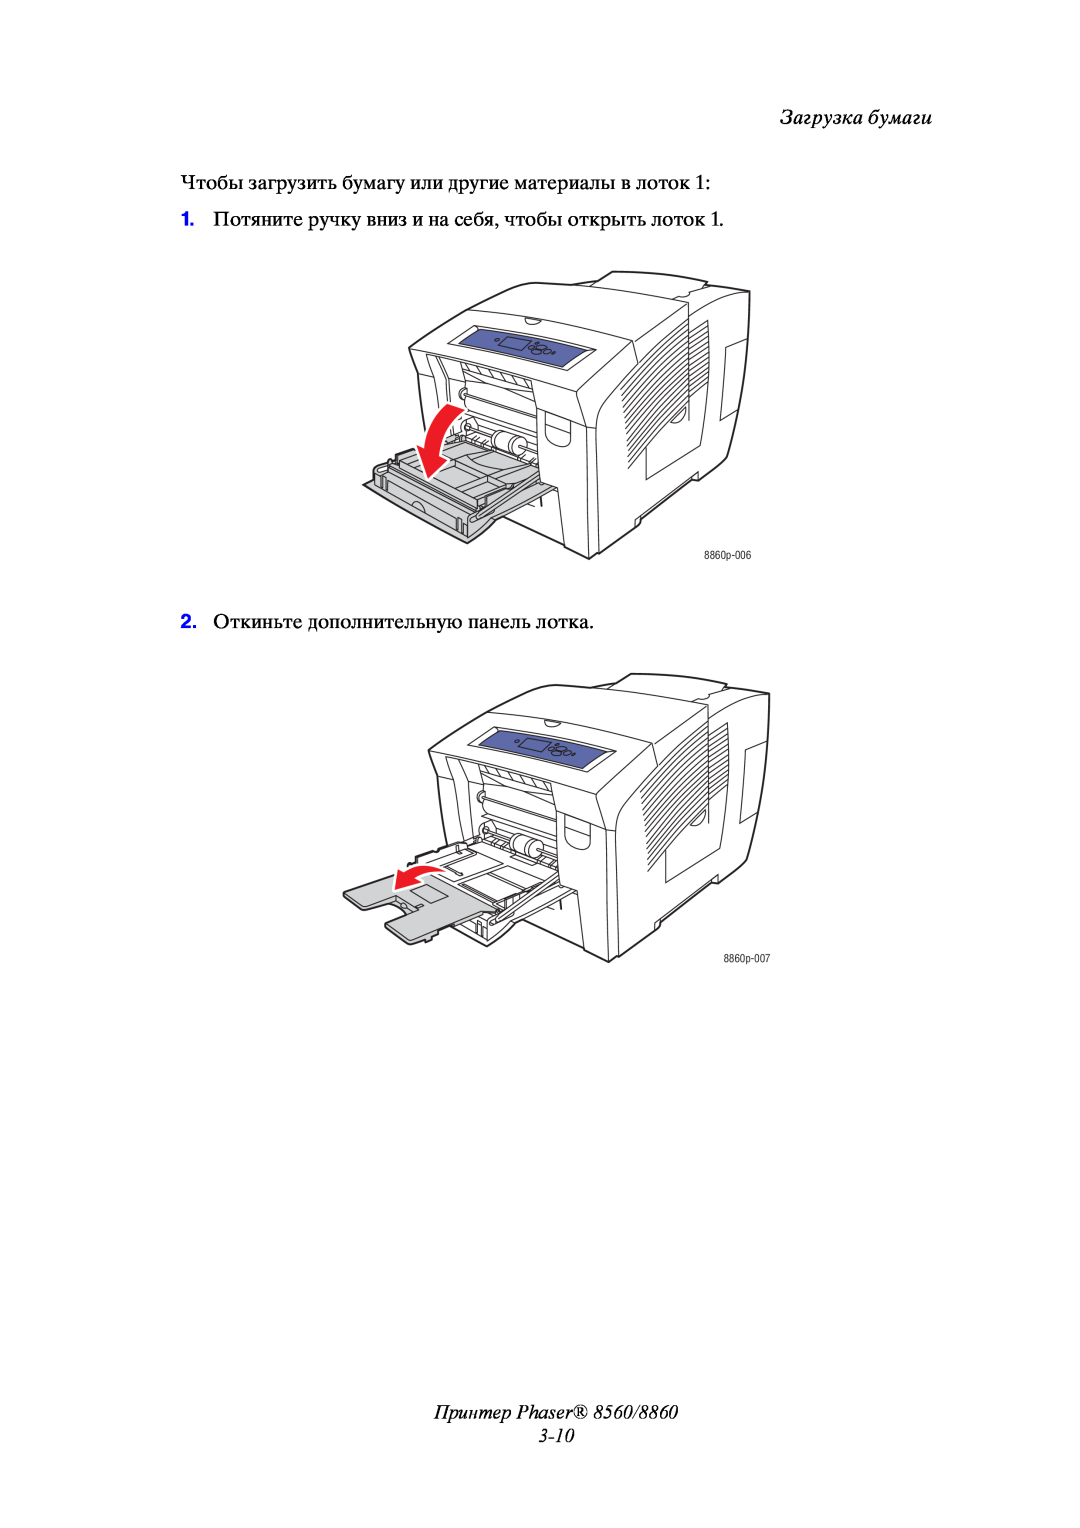 Xerox Принтер Phaser 8560/8860 3-10, Загрузка бумаги, Чтобы загрузить бумагу или другие материалы в лоток, 8860p-006 